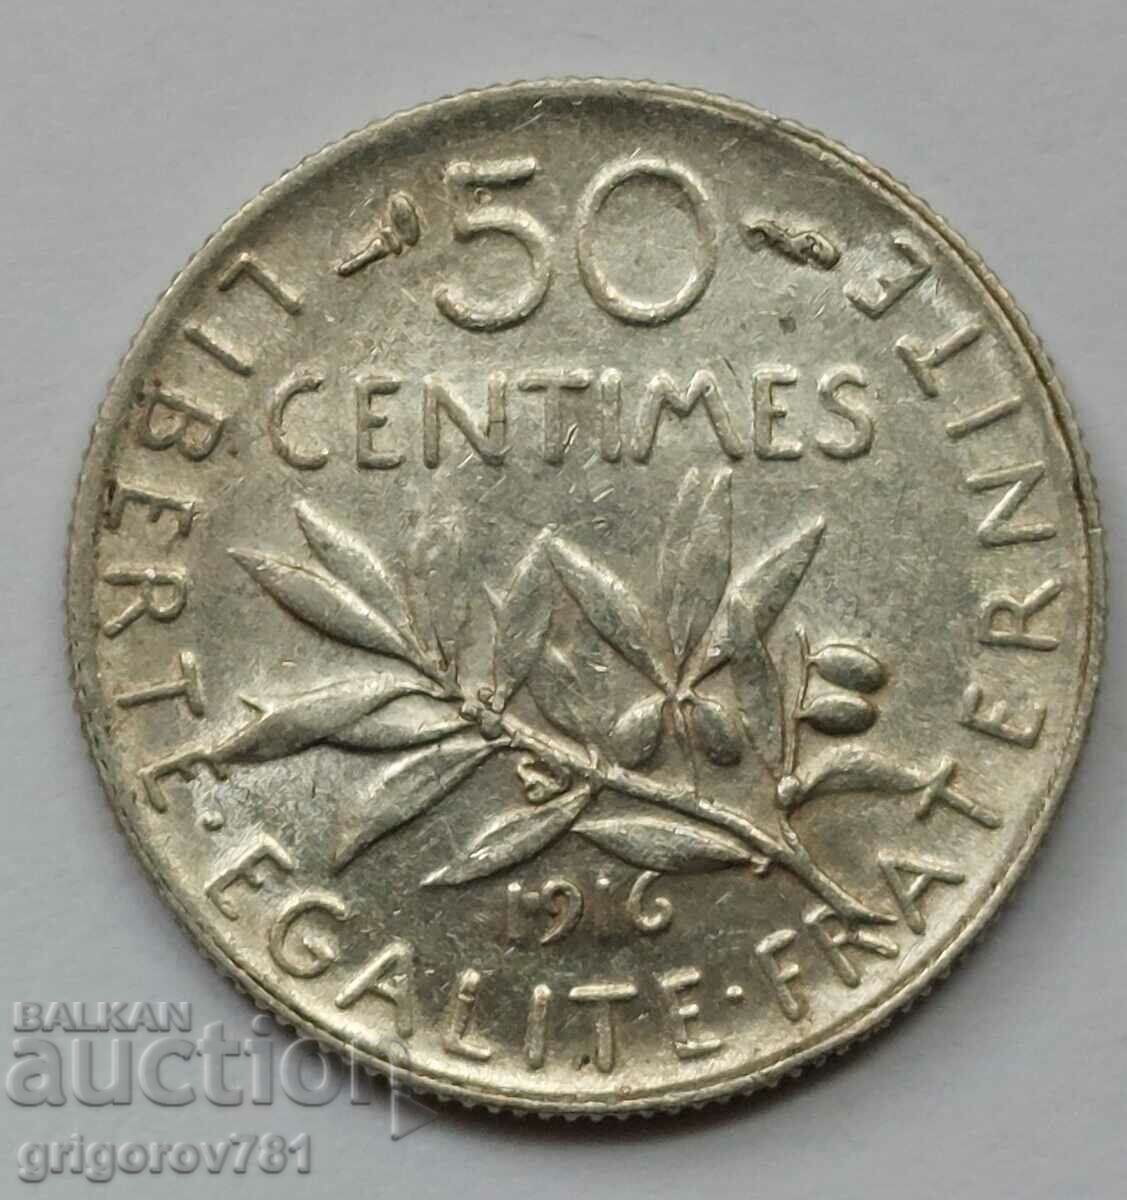 Ασημένιο 50 εκατοστά Γαλλία 1916 - ασημένιο νόμισμα #71